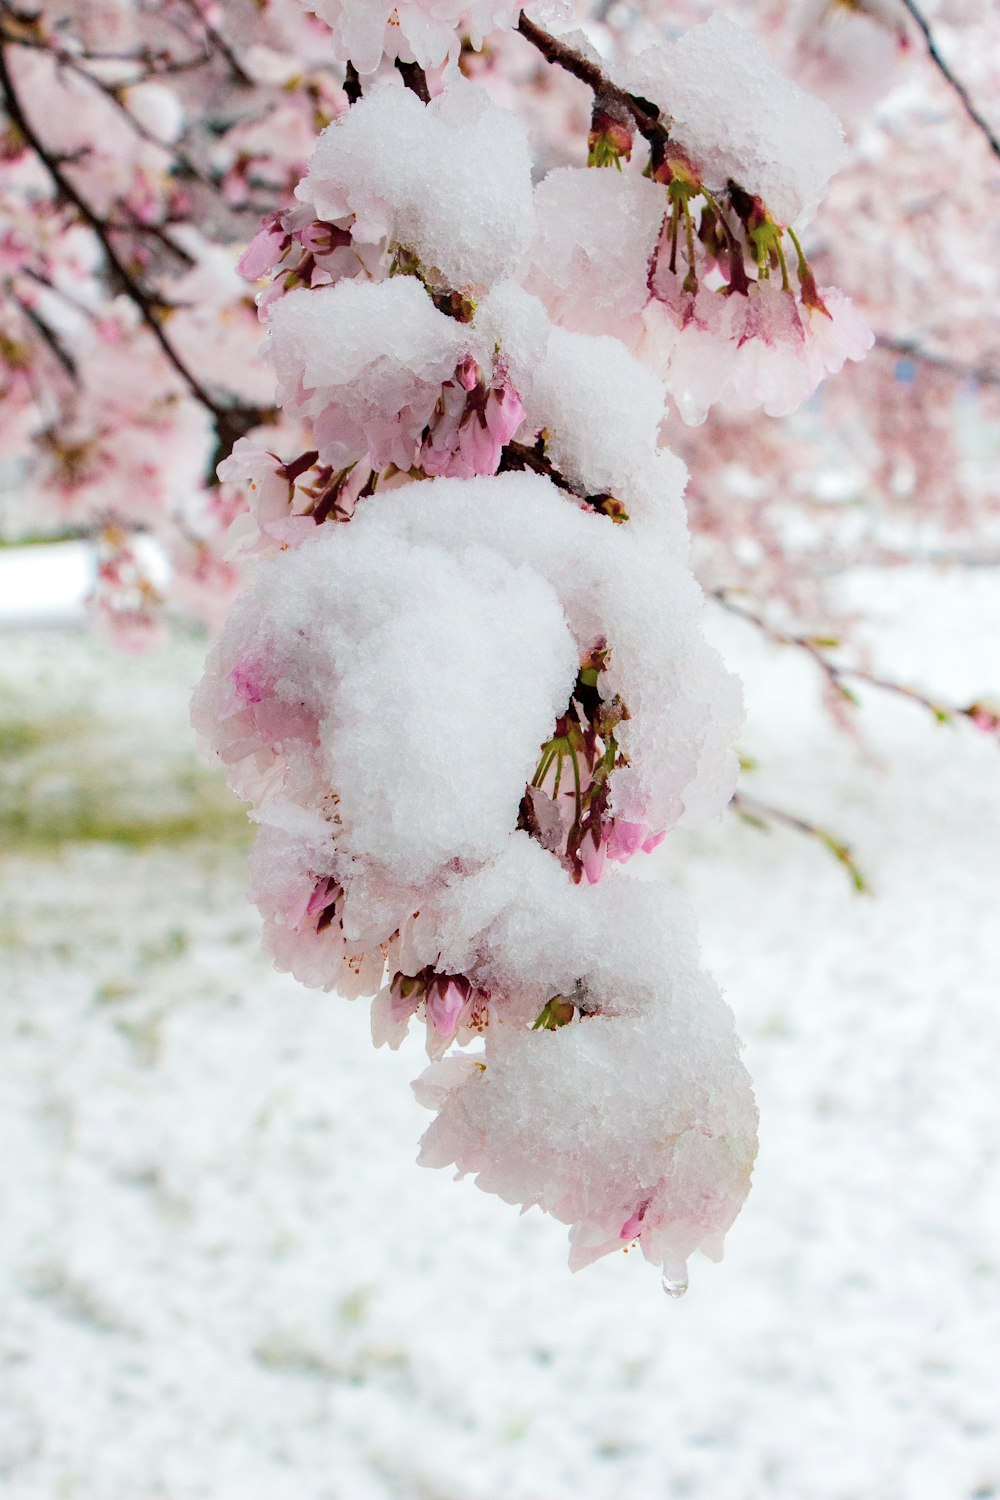 albero di fiori di ciliegio bianco e rosa